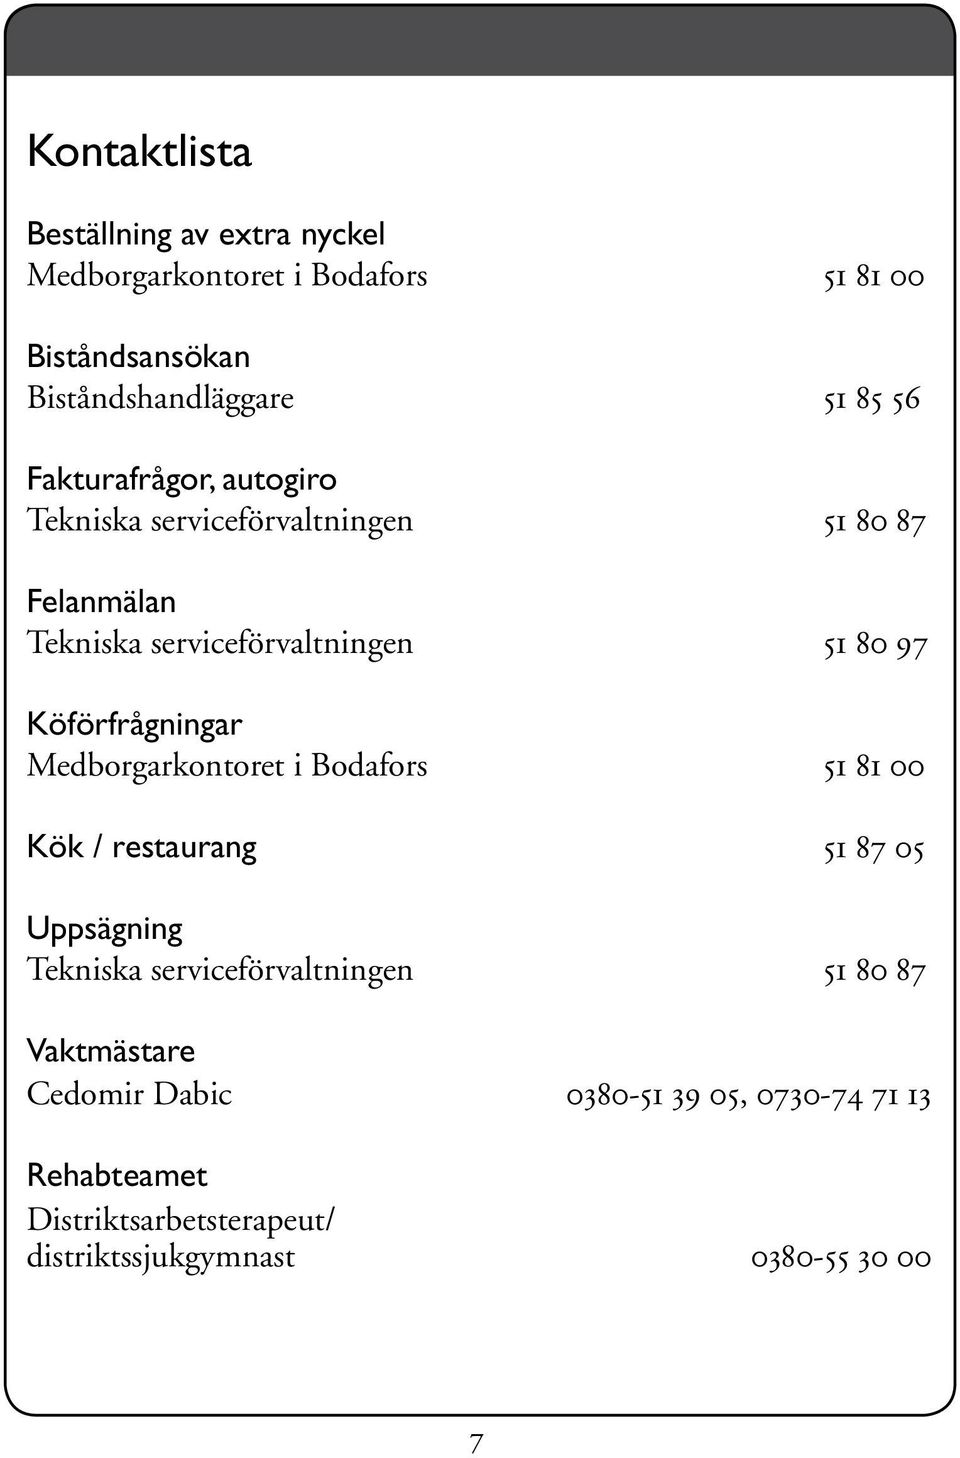 Dejtingintresserade singlar i kalajoki